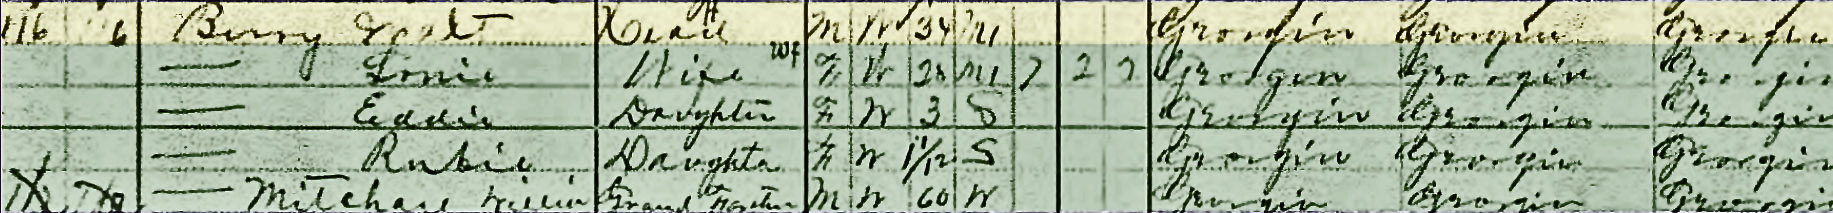 Walter Glen Berry 1910 census GA number 2